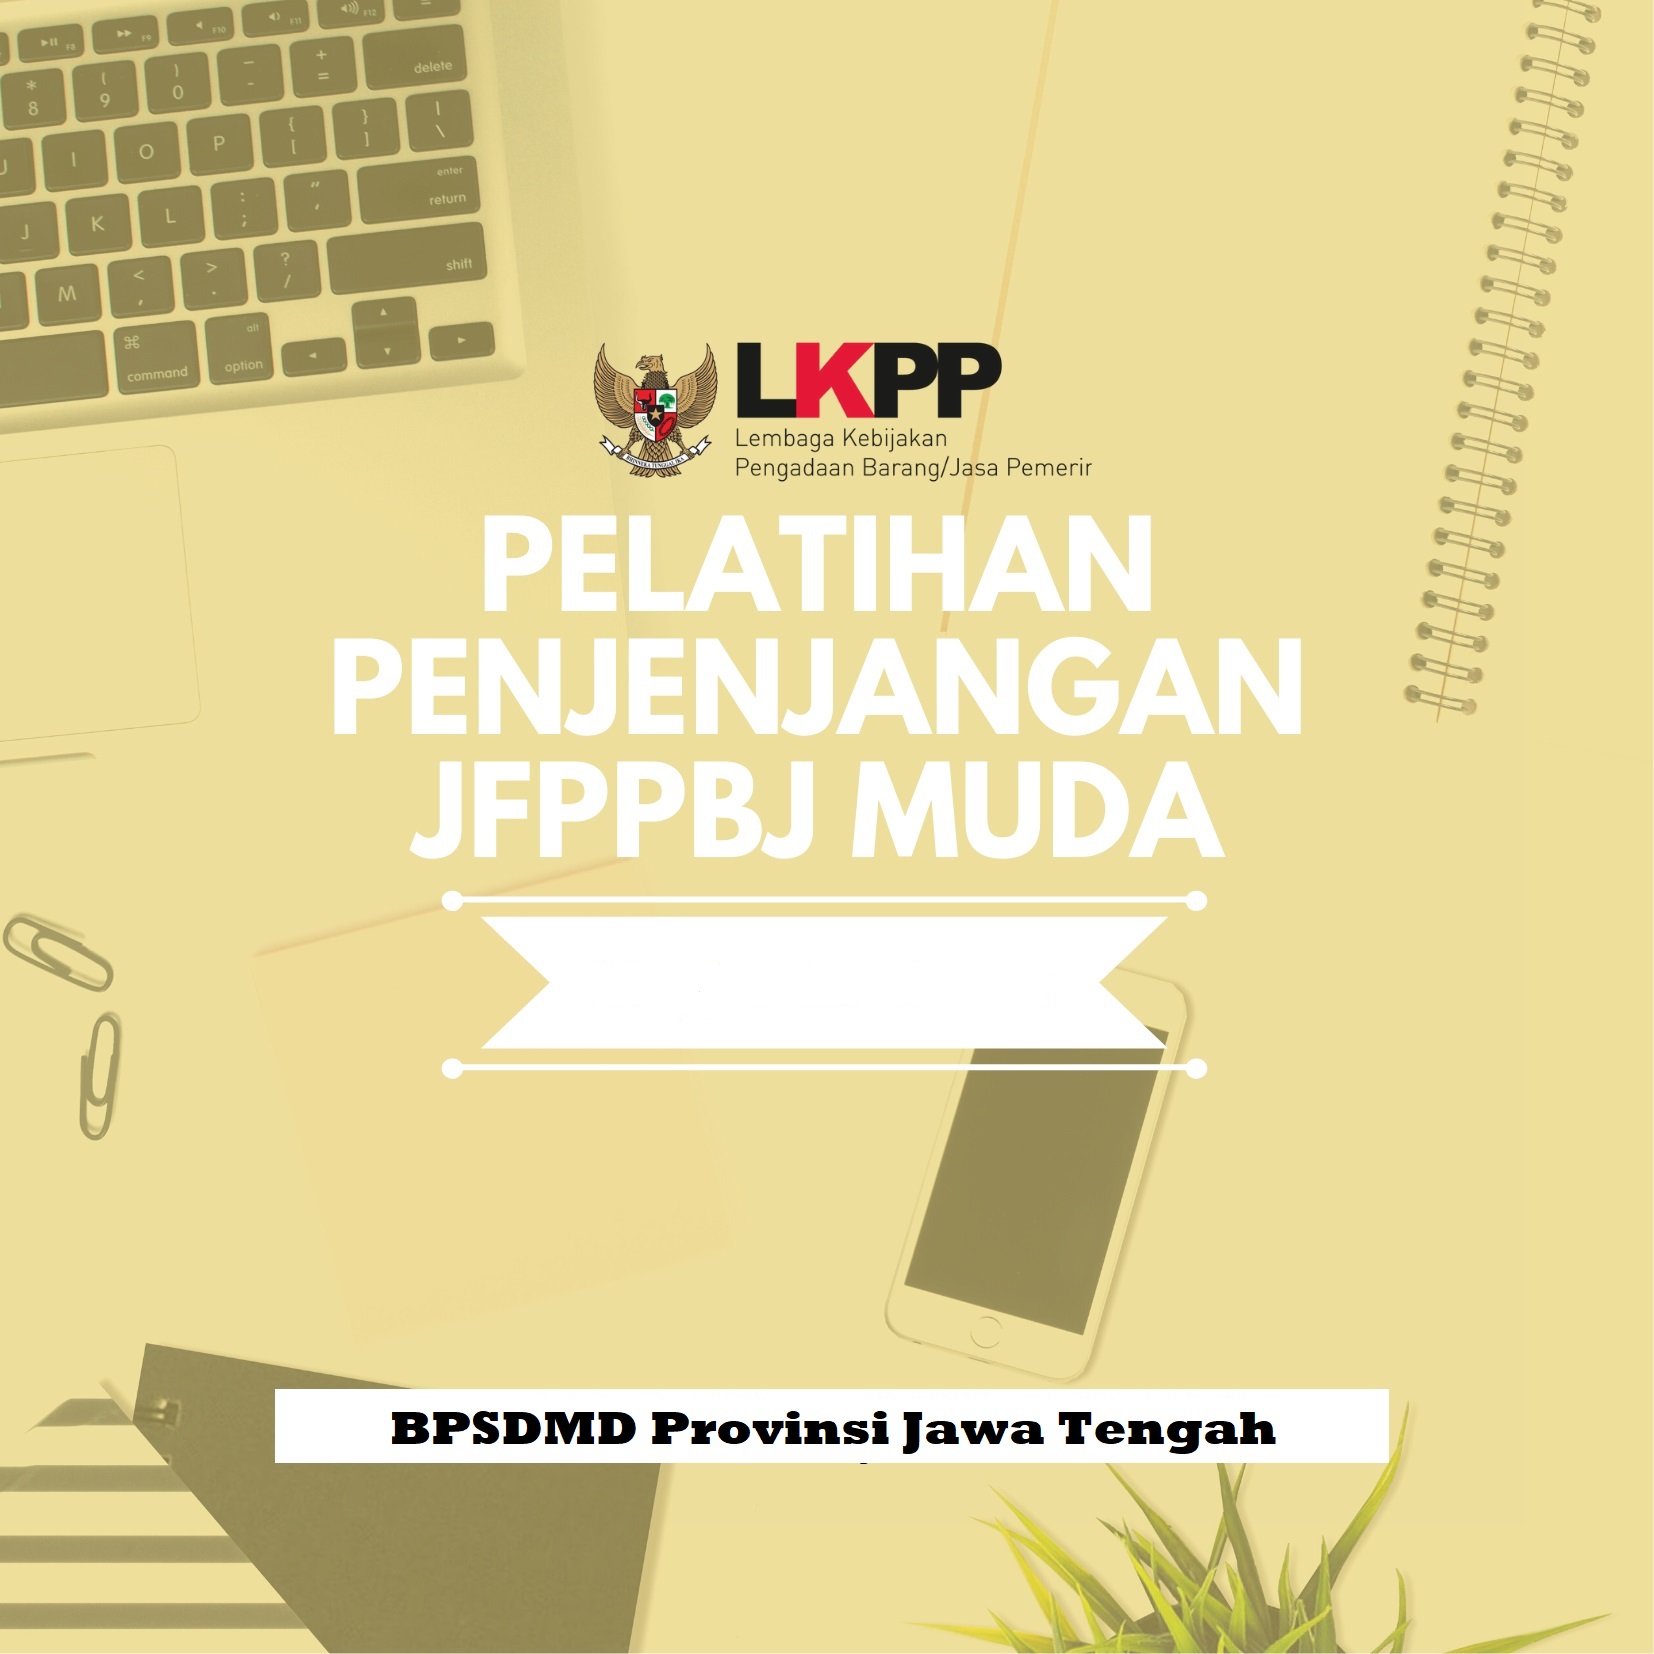 2719_3/4 - 11/7 Pelatihan Penjenjangan JF PPBJ Muda - BPSDM Jawa Tengah